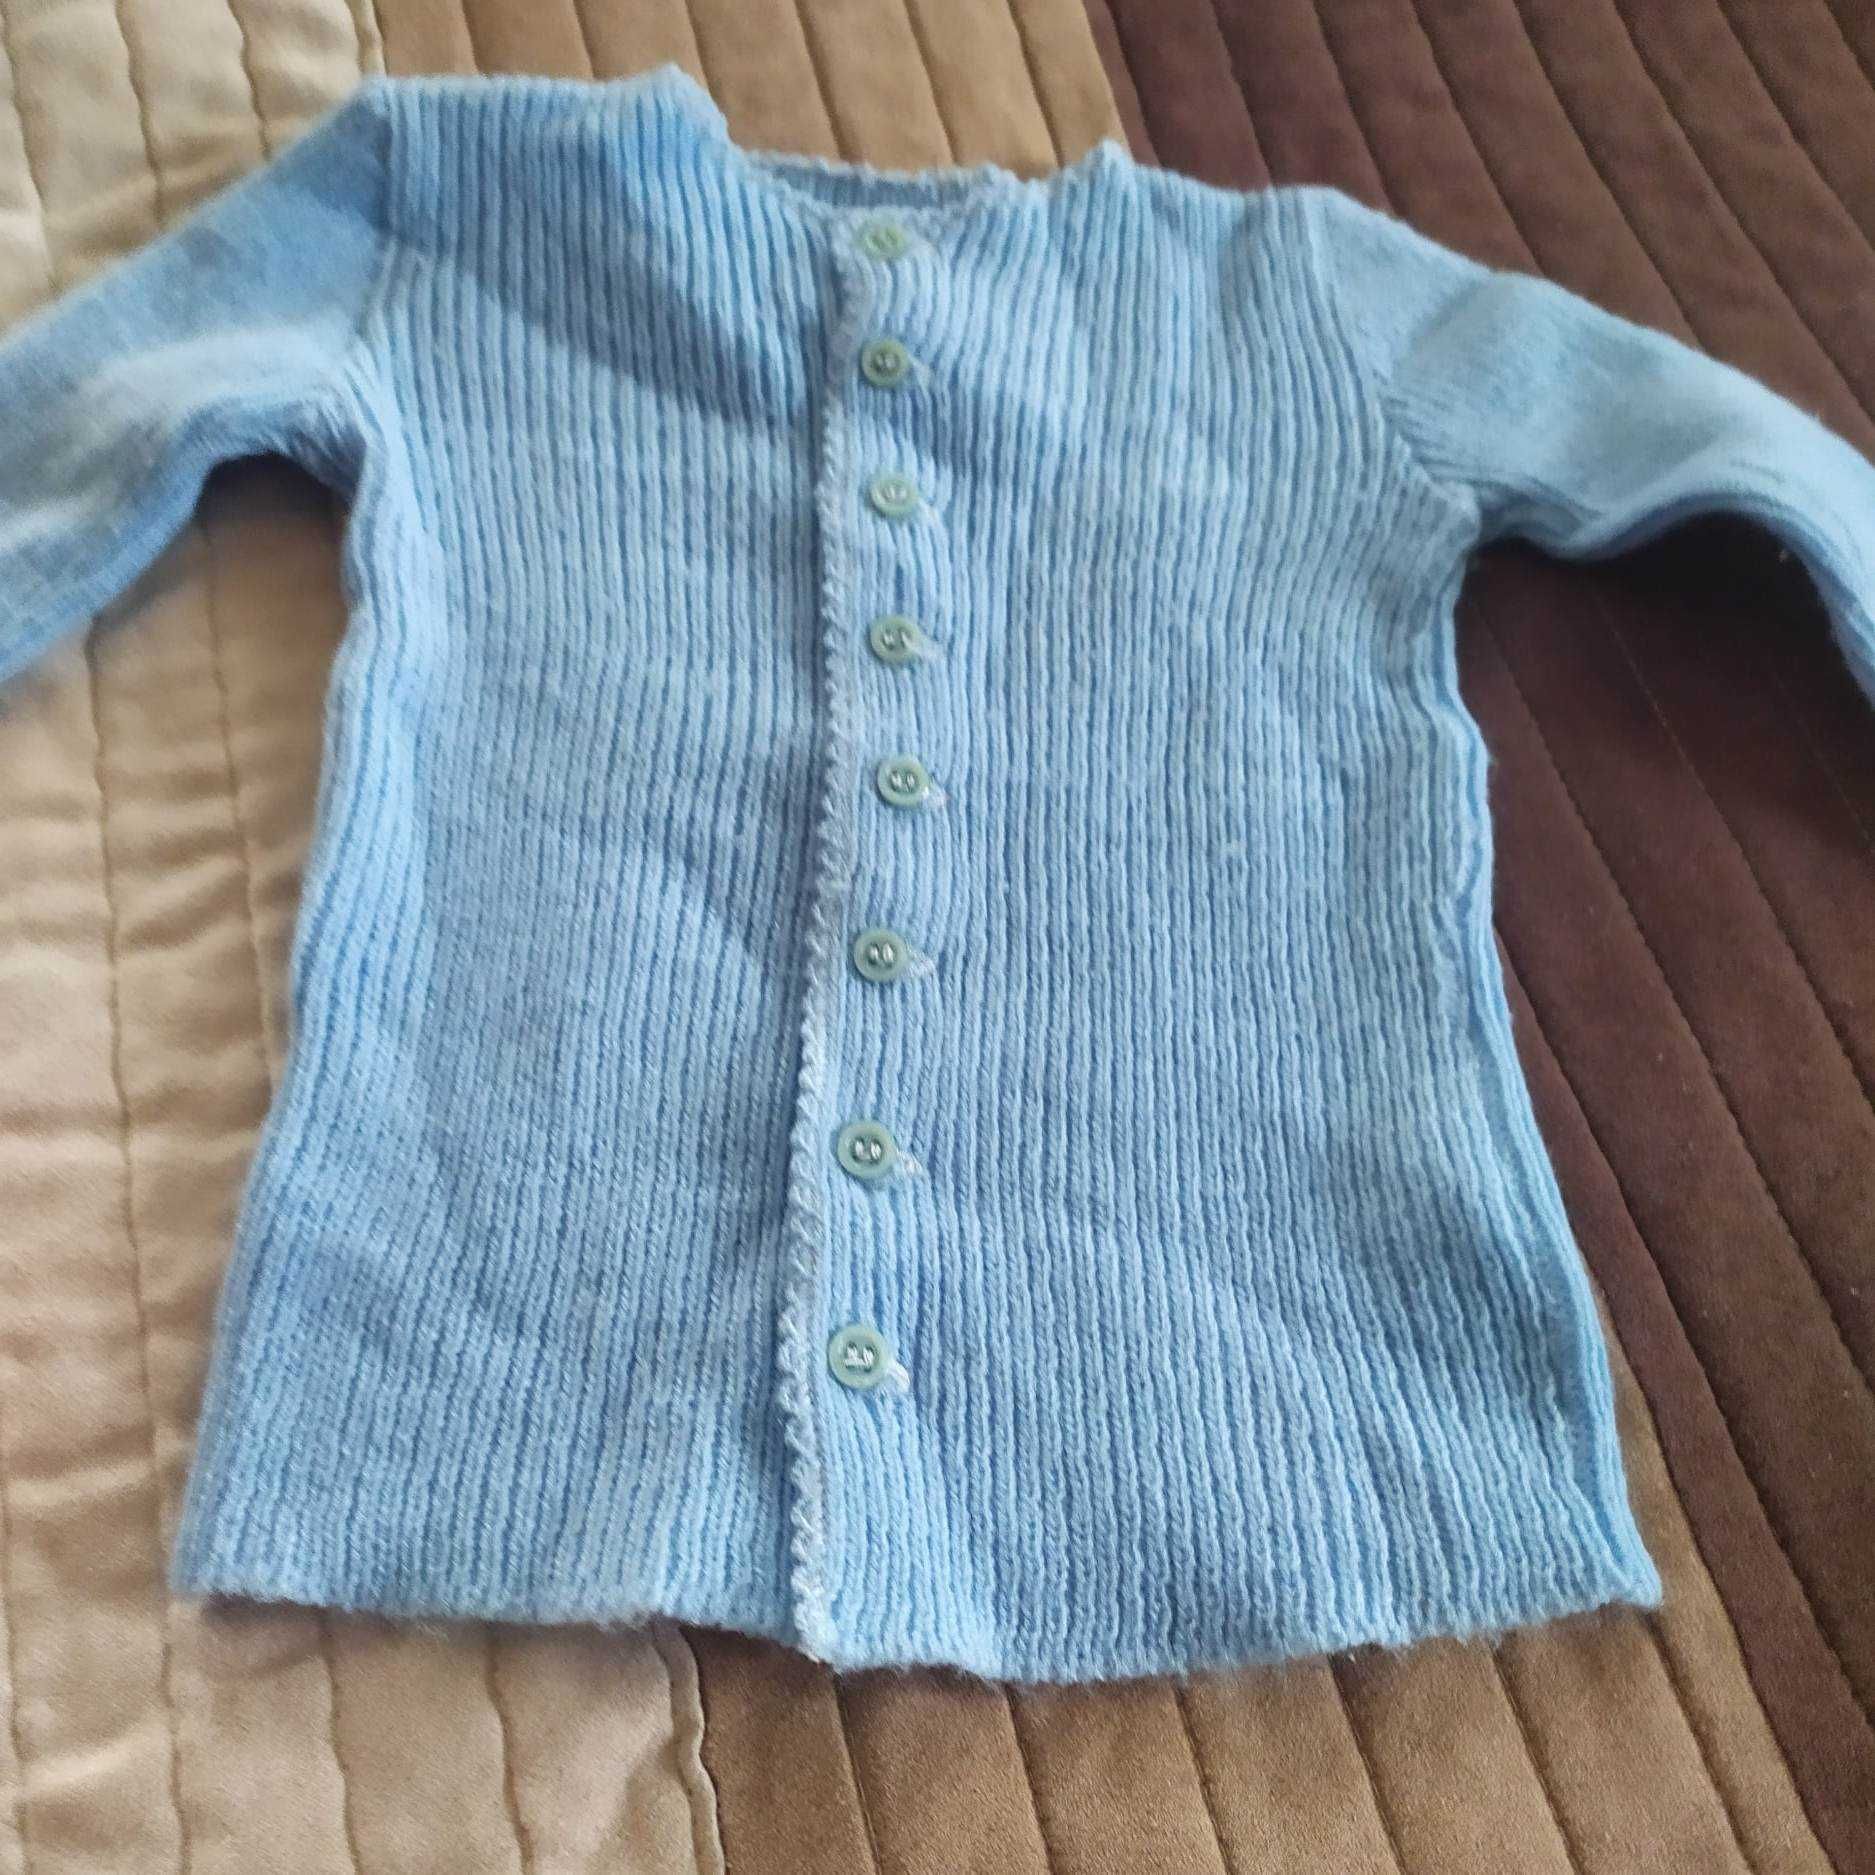 Śpiochy swetr kaftanik dla niemowlaka 4 sztuki za 4zł.